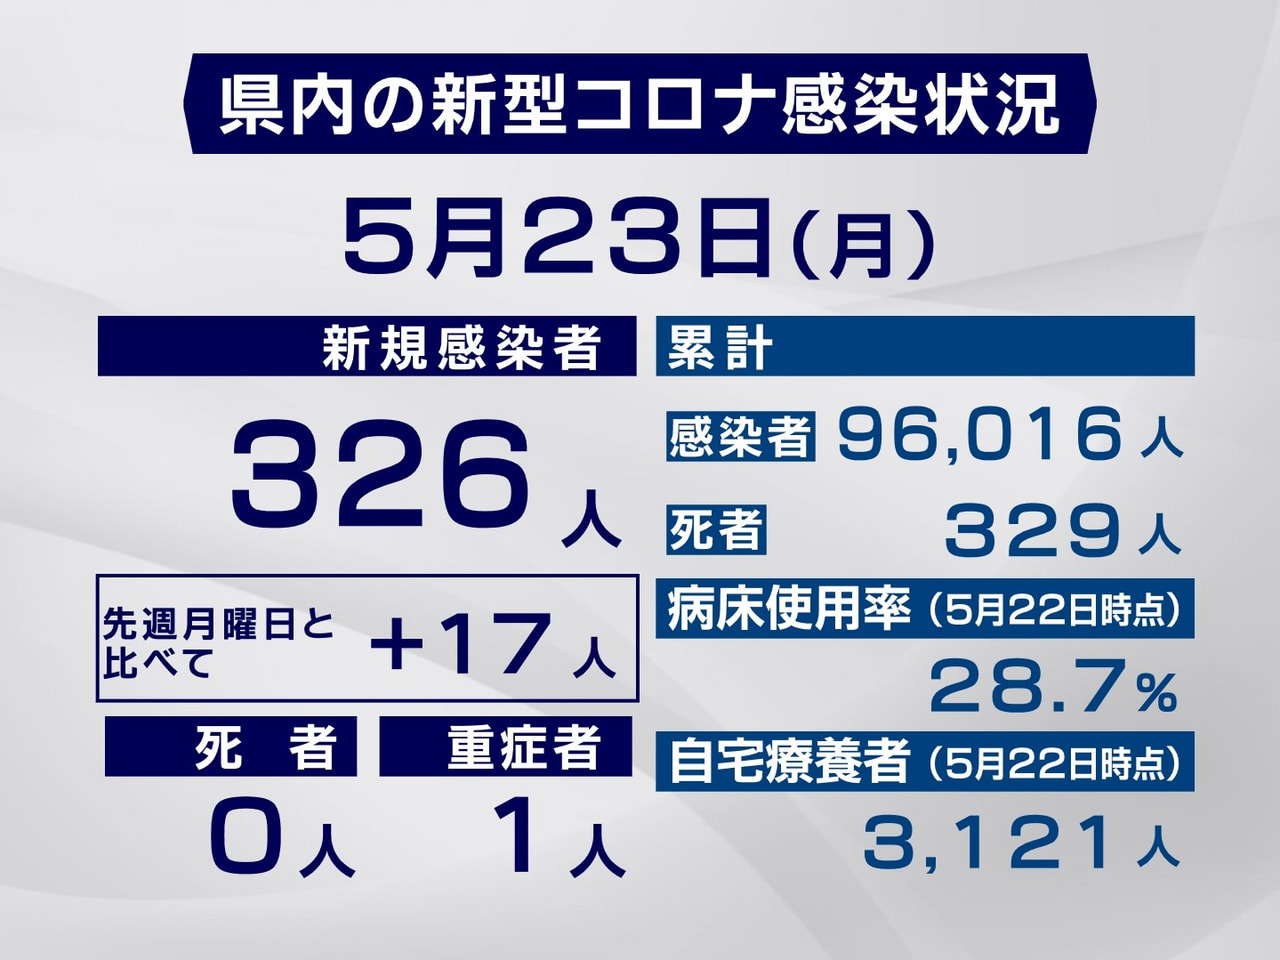 岐阜県は２３日、新型コロナウイルスの新規感染者が３２６人確認されたと発表しました...